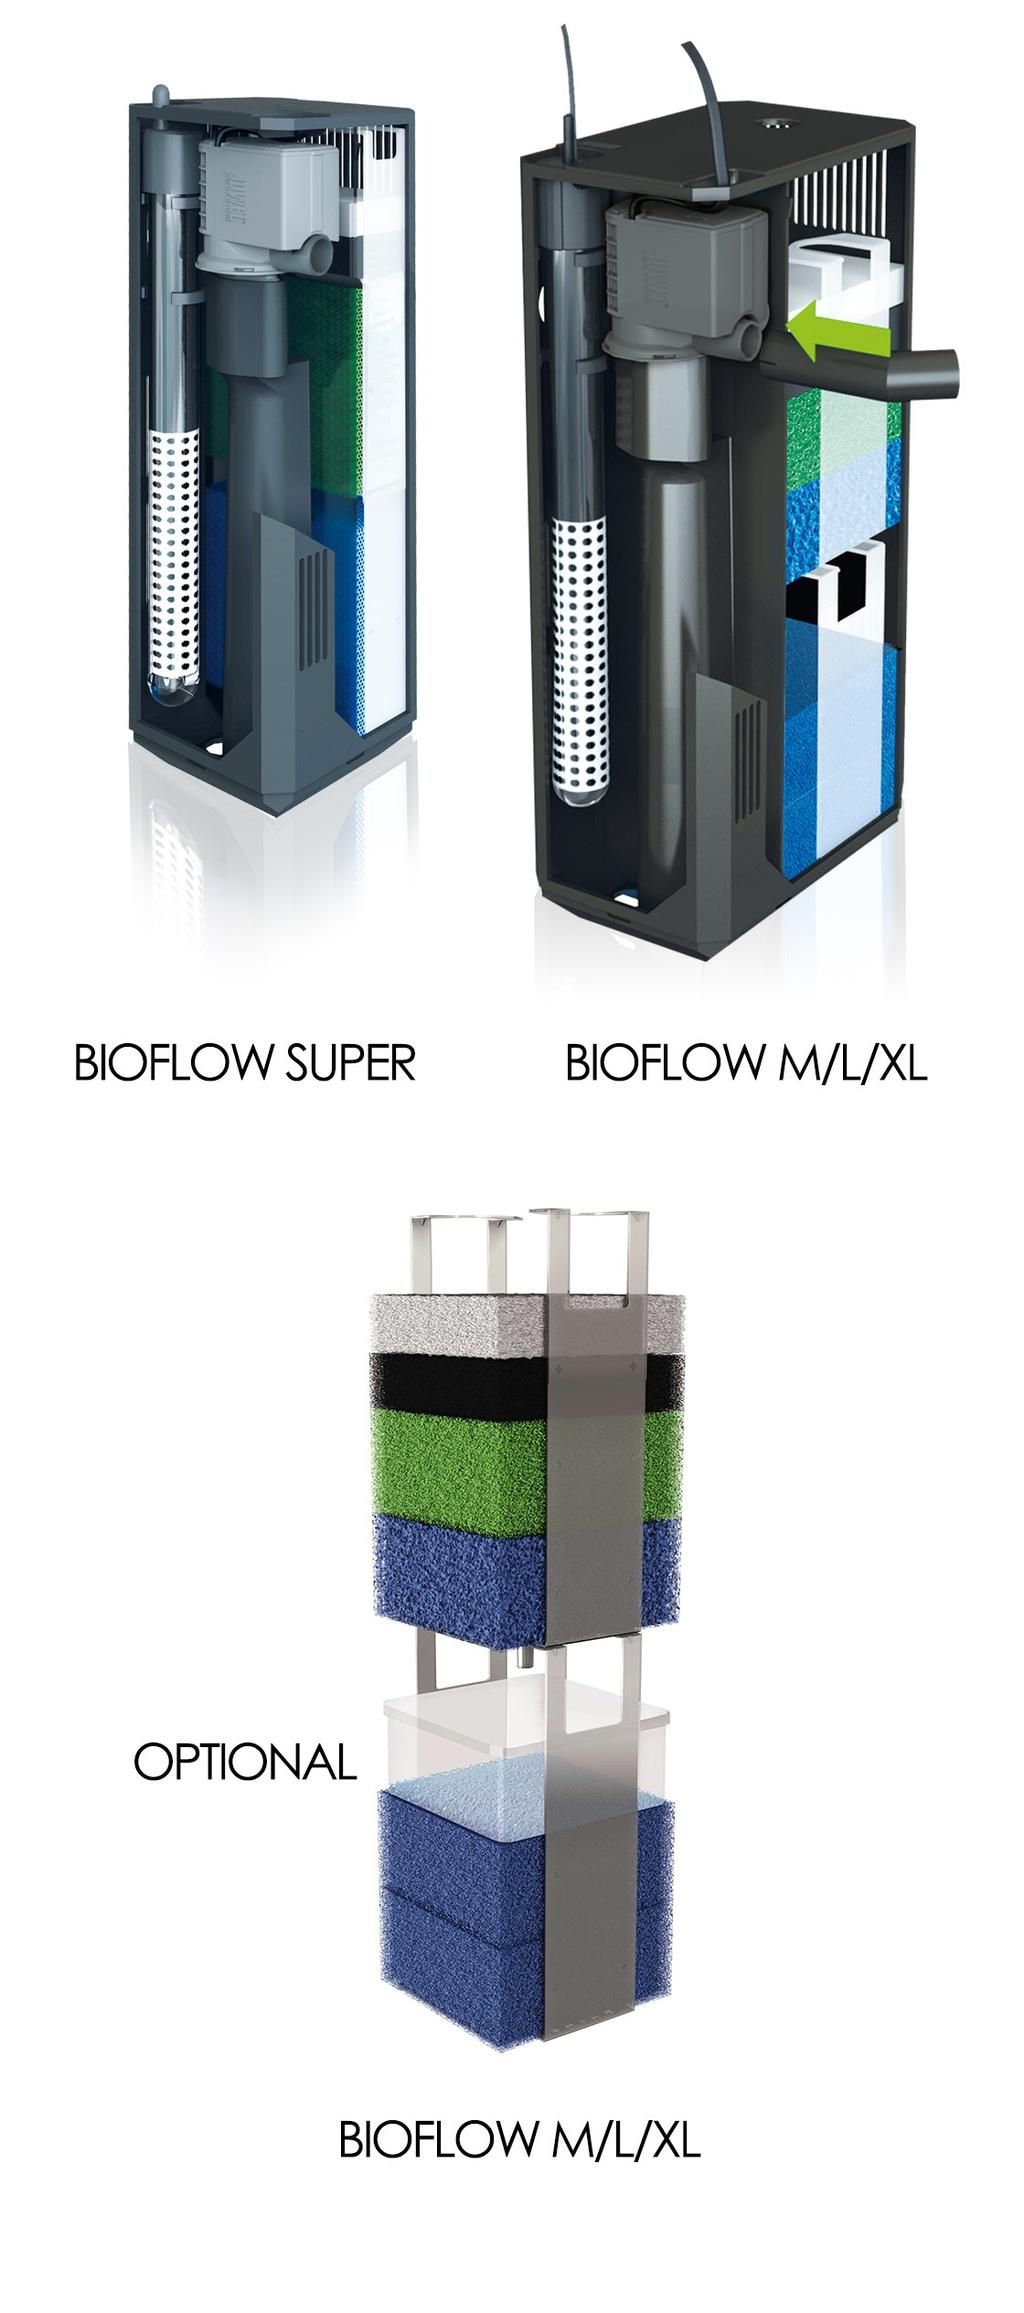 Filtrační systém JUWEL Bioflow Filtrační systém JUWEL Bioﬂow je vysoce účinný biologický dvoufázový ﬁltrační systém, jehož jednotlivé komponenty spolu tvoří optimální funkční komplex.